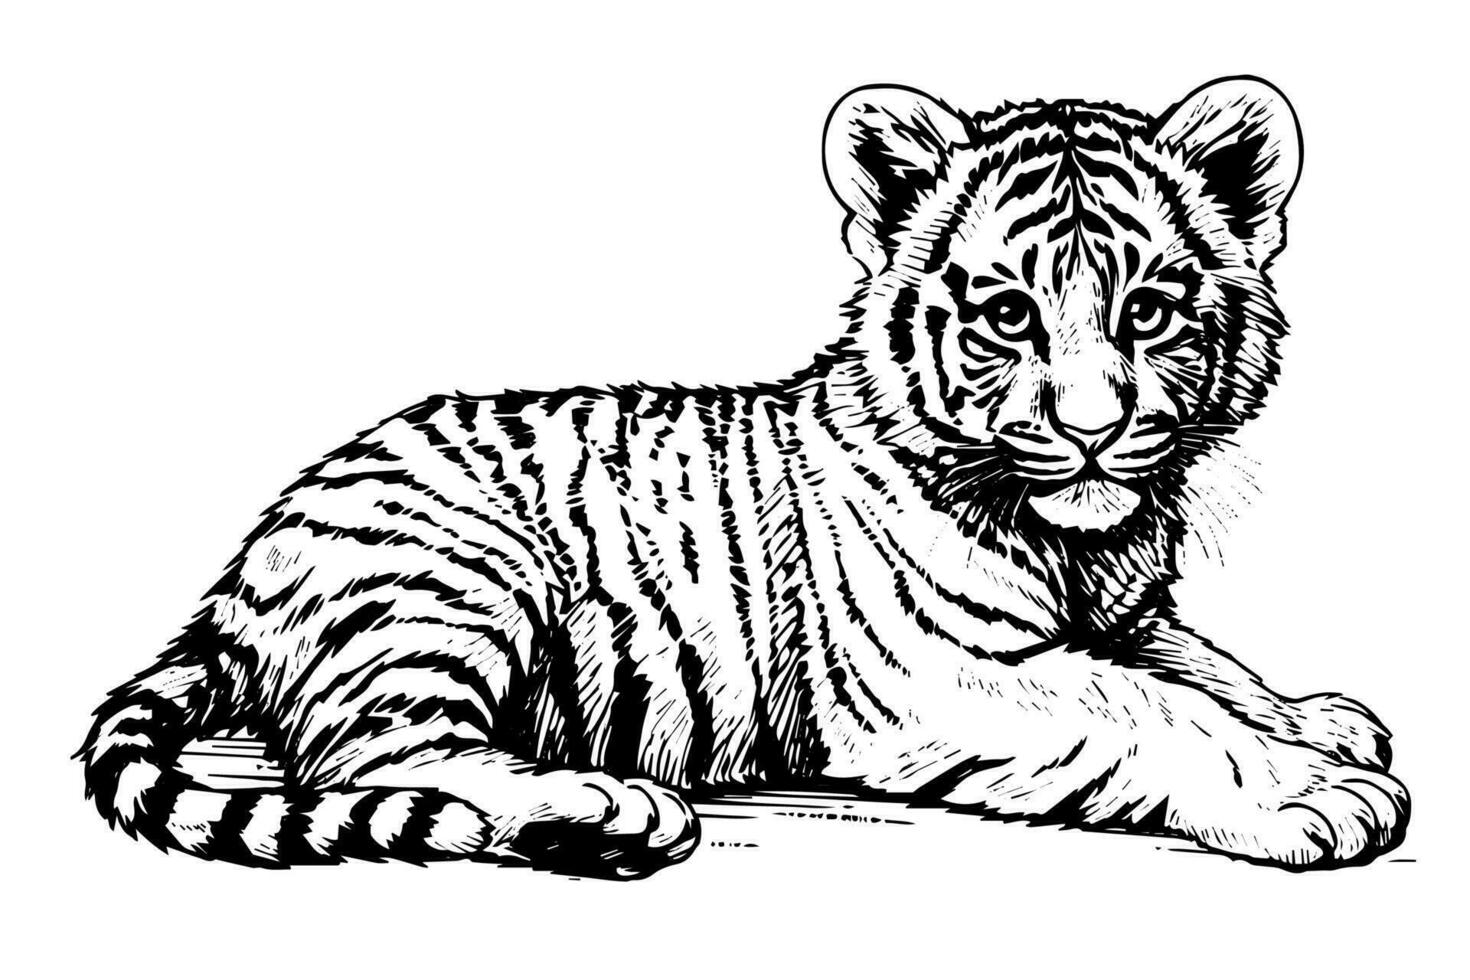 hand- getrokken gravure stijl schetsen van een tijger welp, vector inkt illustratie.